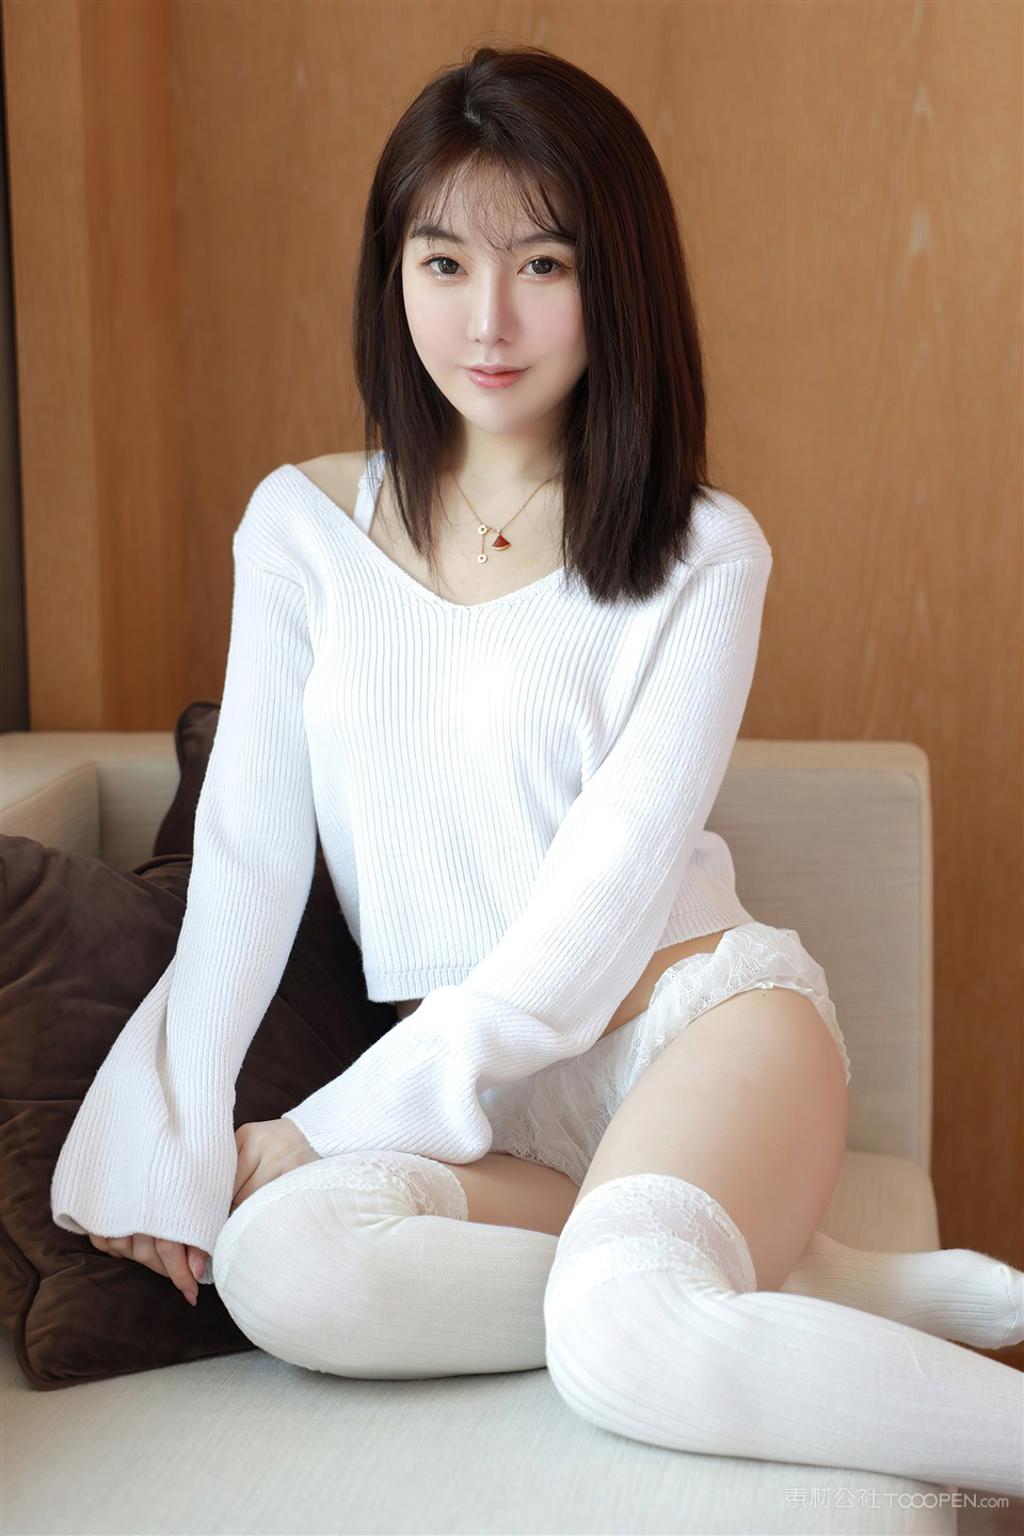 穿白衣毛衣极品韩国人体艺术美女模特写真图片